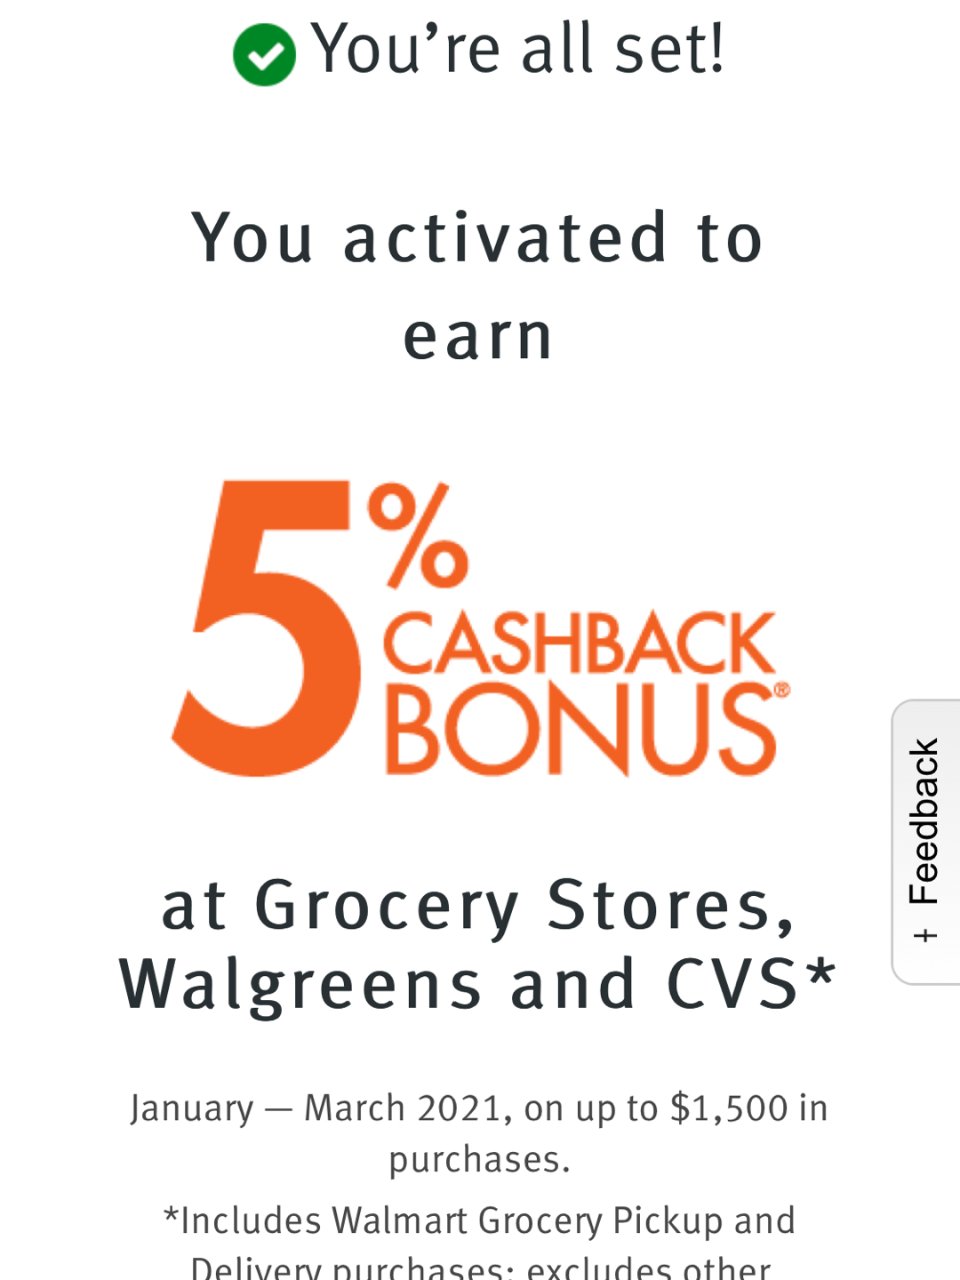 Discover,Walgreens,CVS